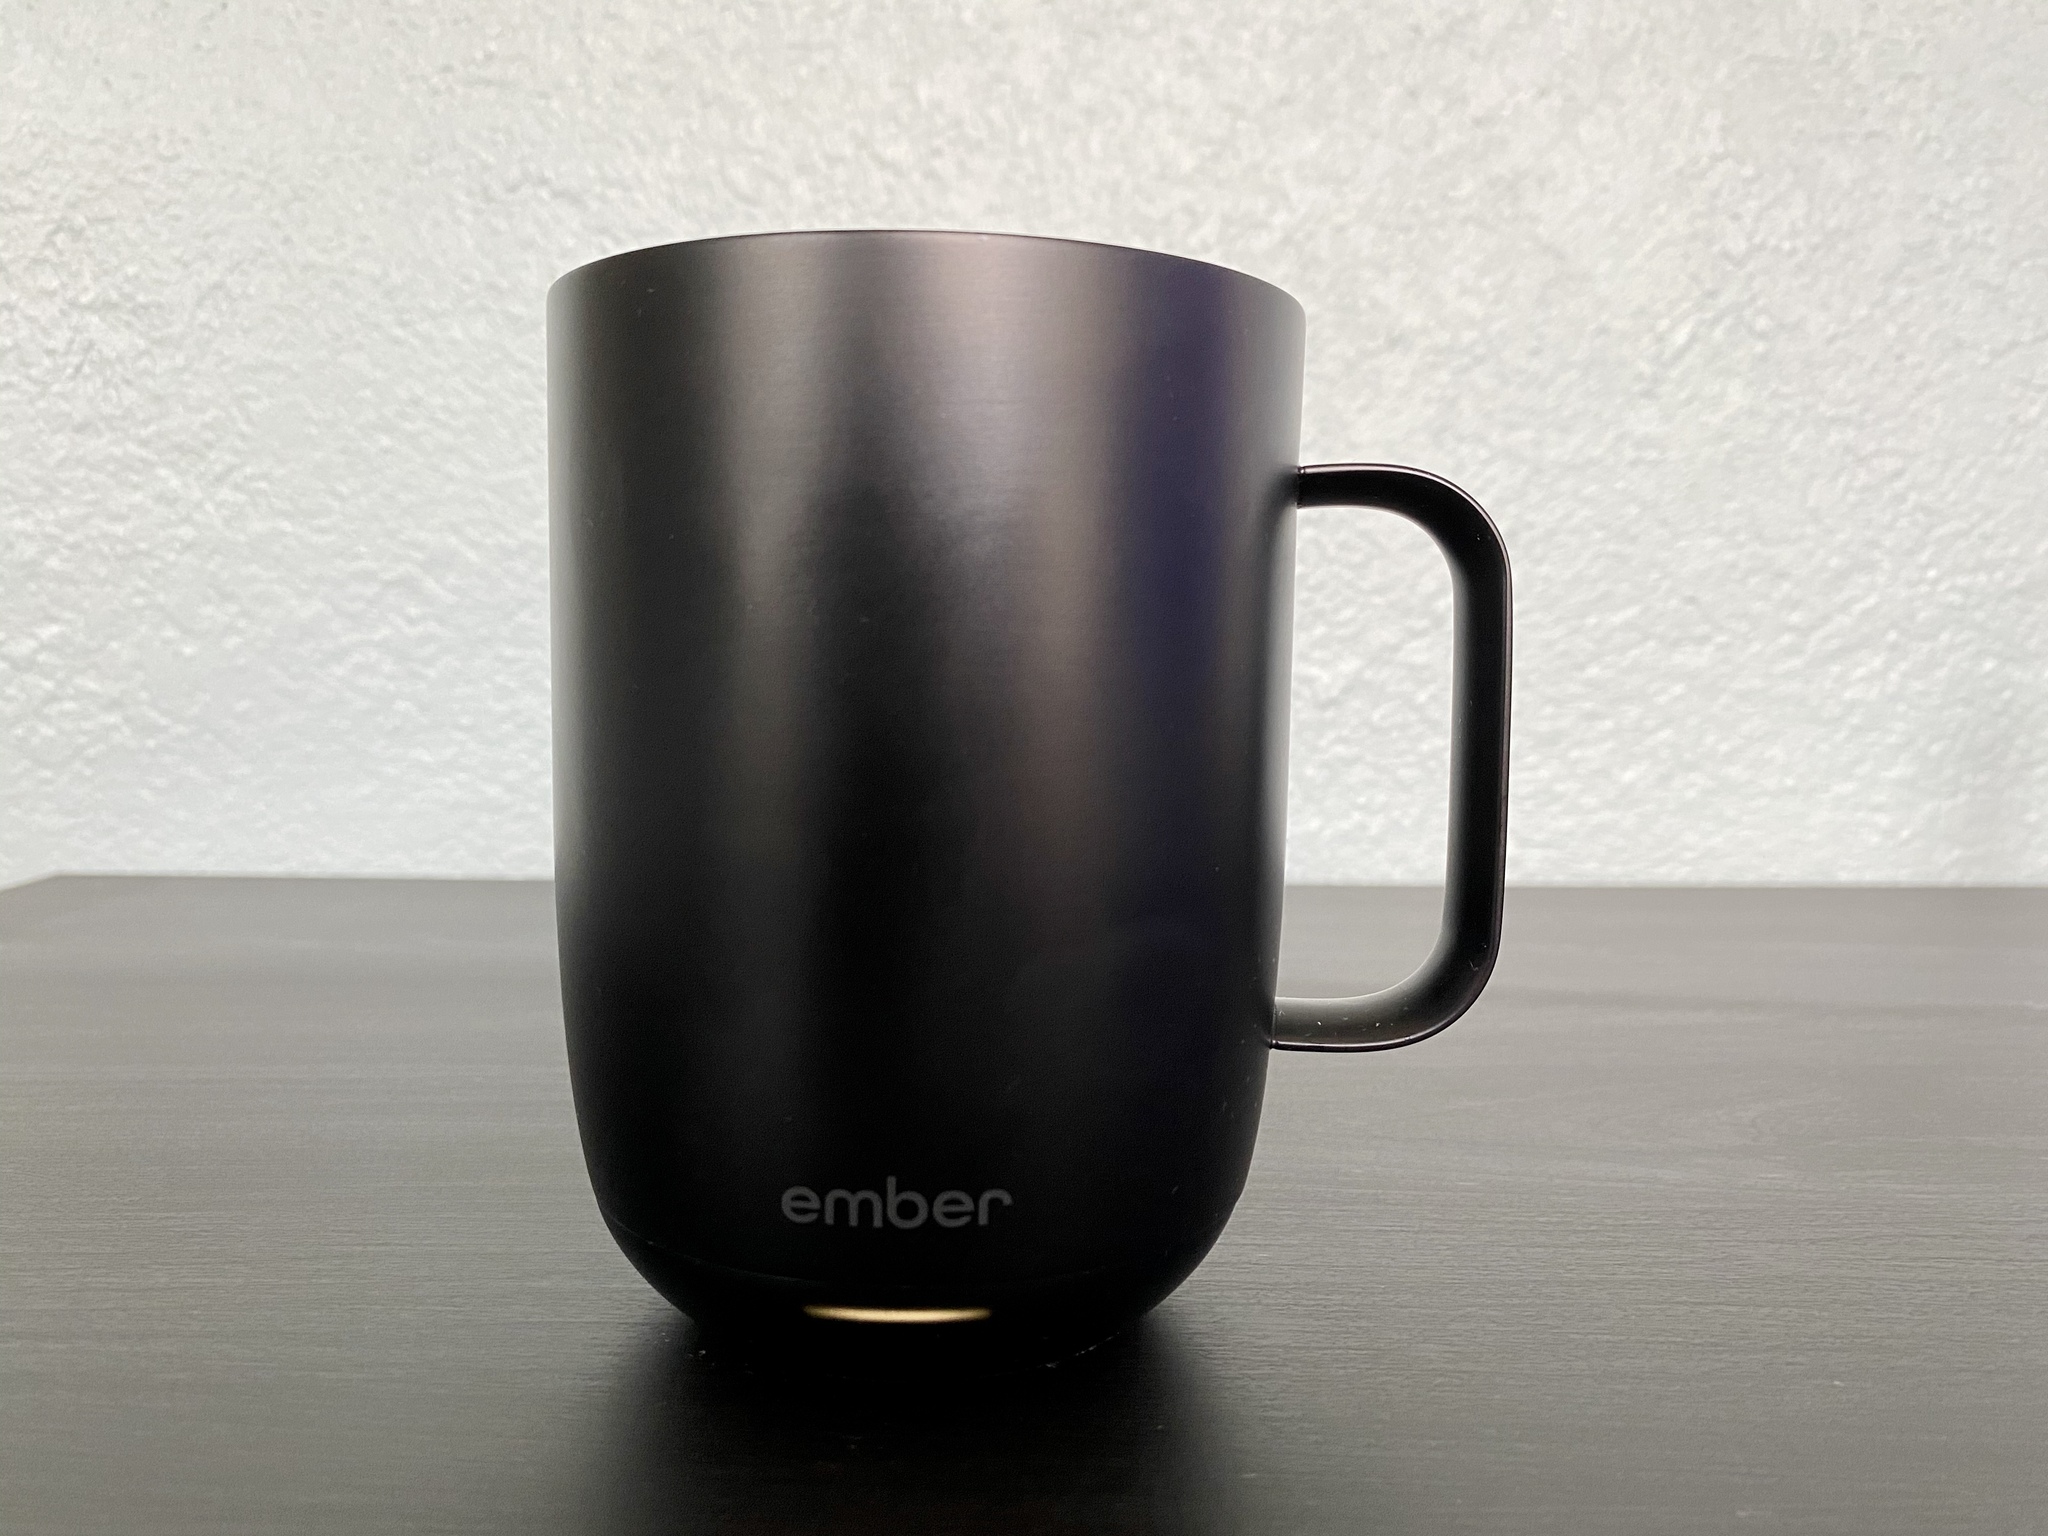 Ember Black 16-Oz. Travel Mug + Reviews